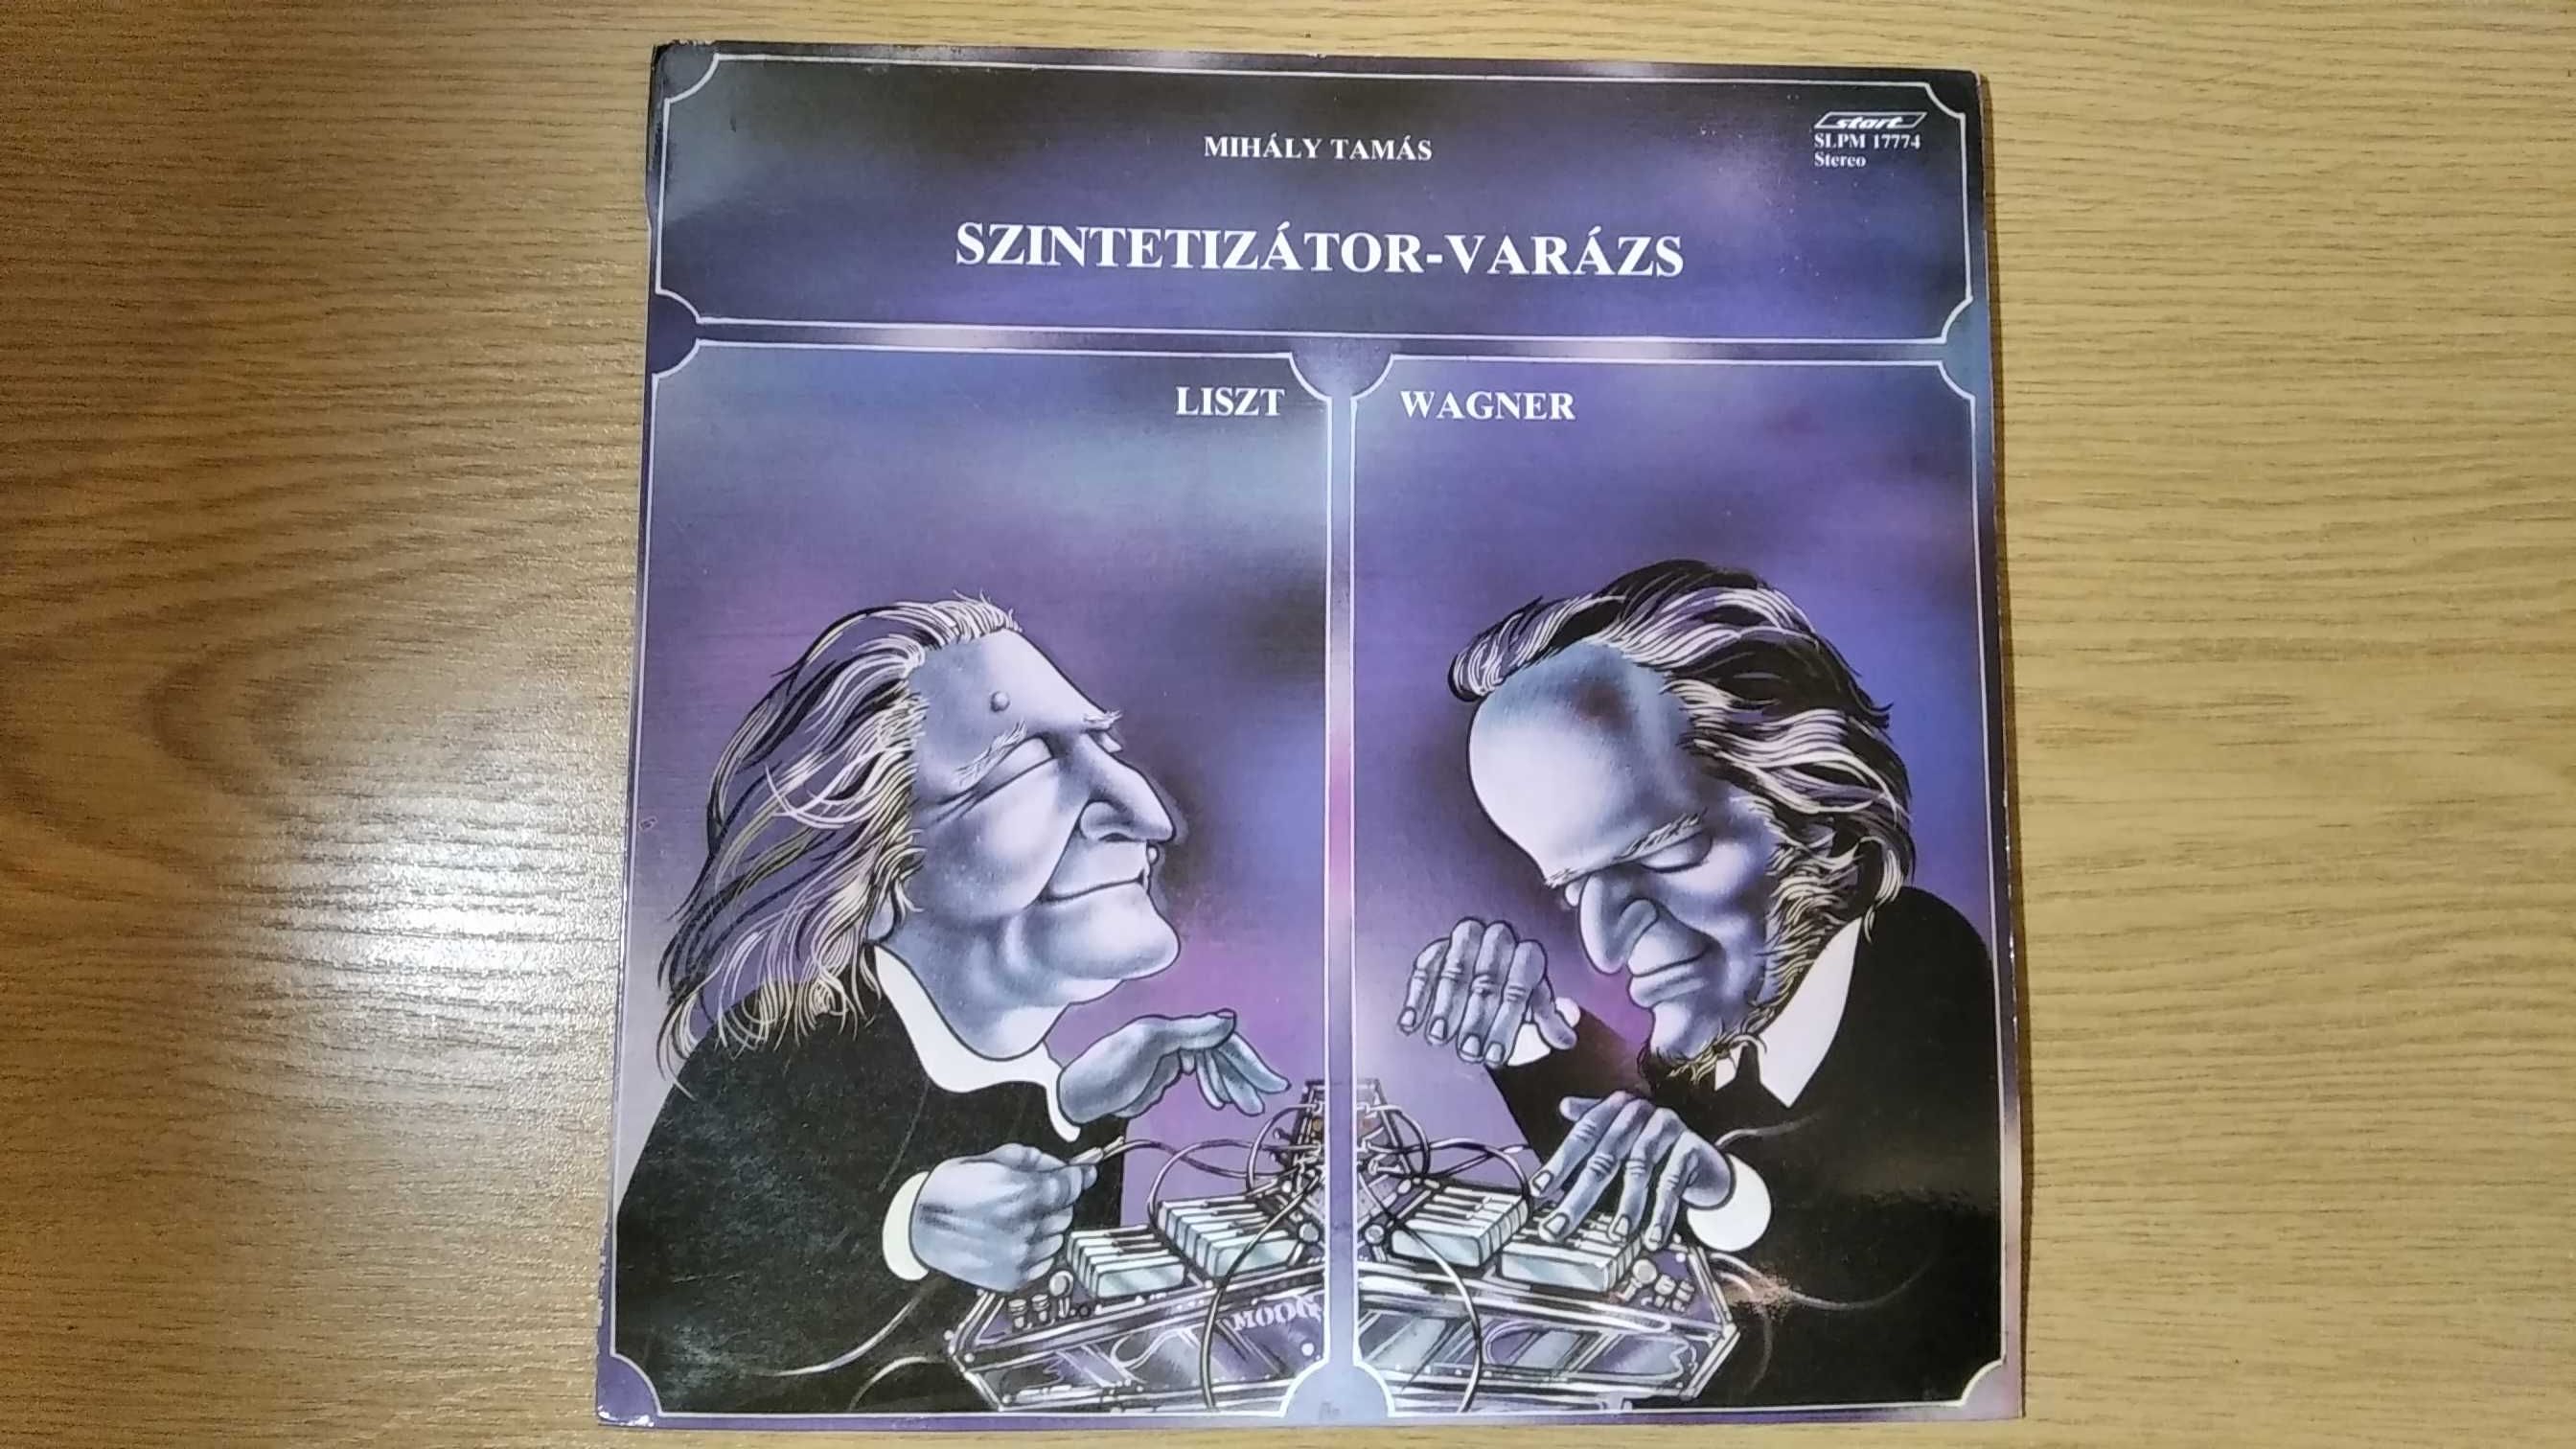 Winyl Liszt Wagner Hungary elektroniczne interpretacje